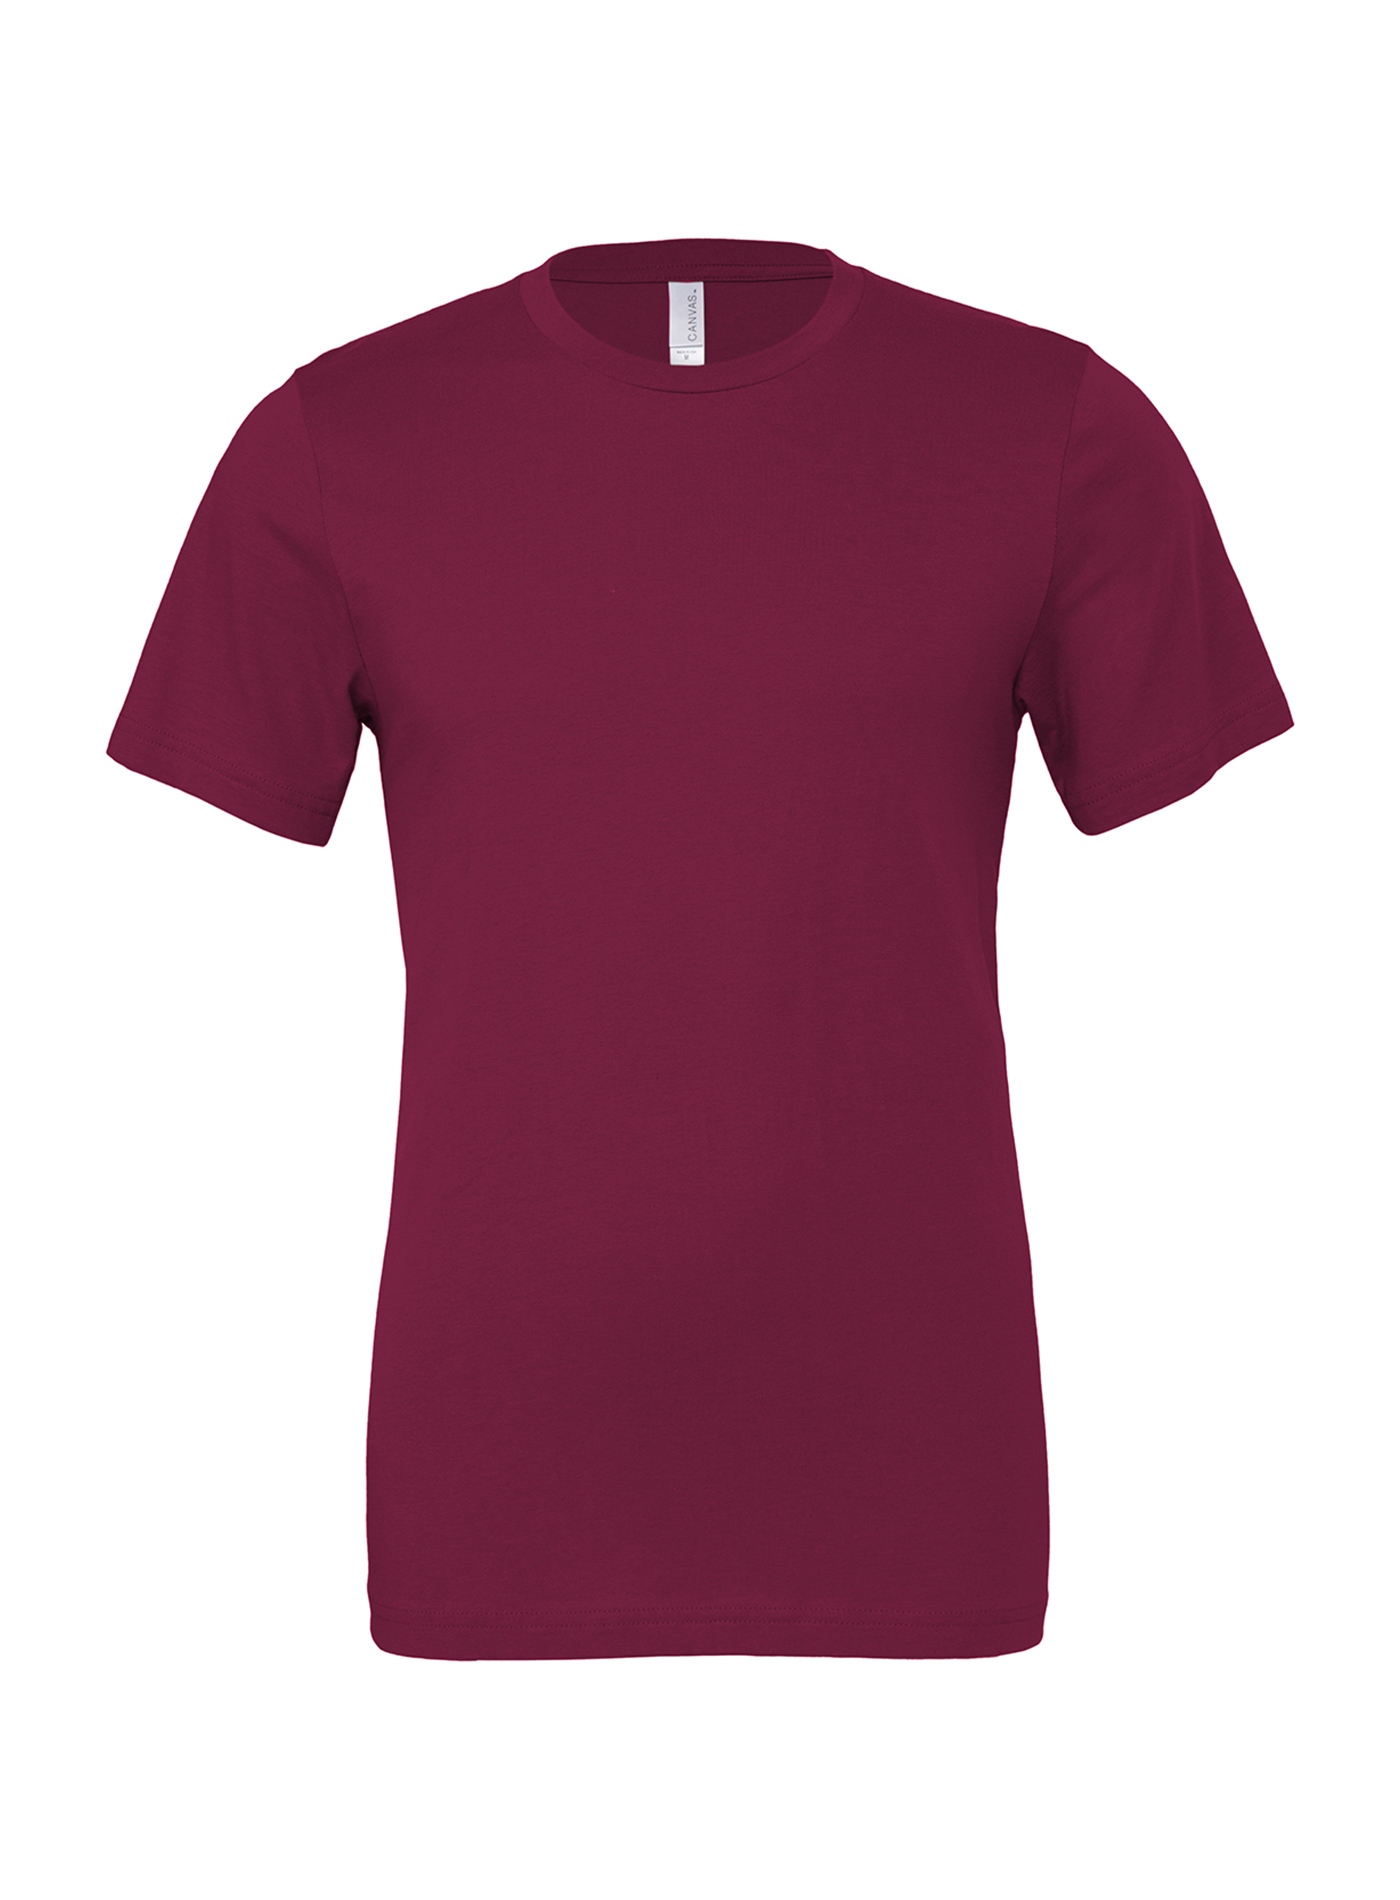 Unisex tričko Bella + Canvas Jersey - Červenofialová S